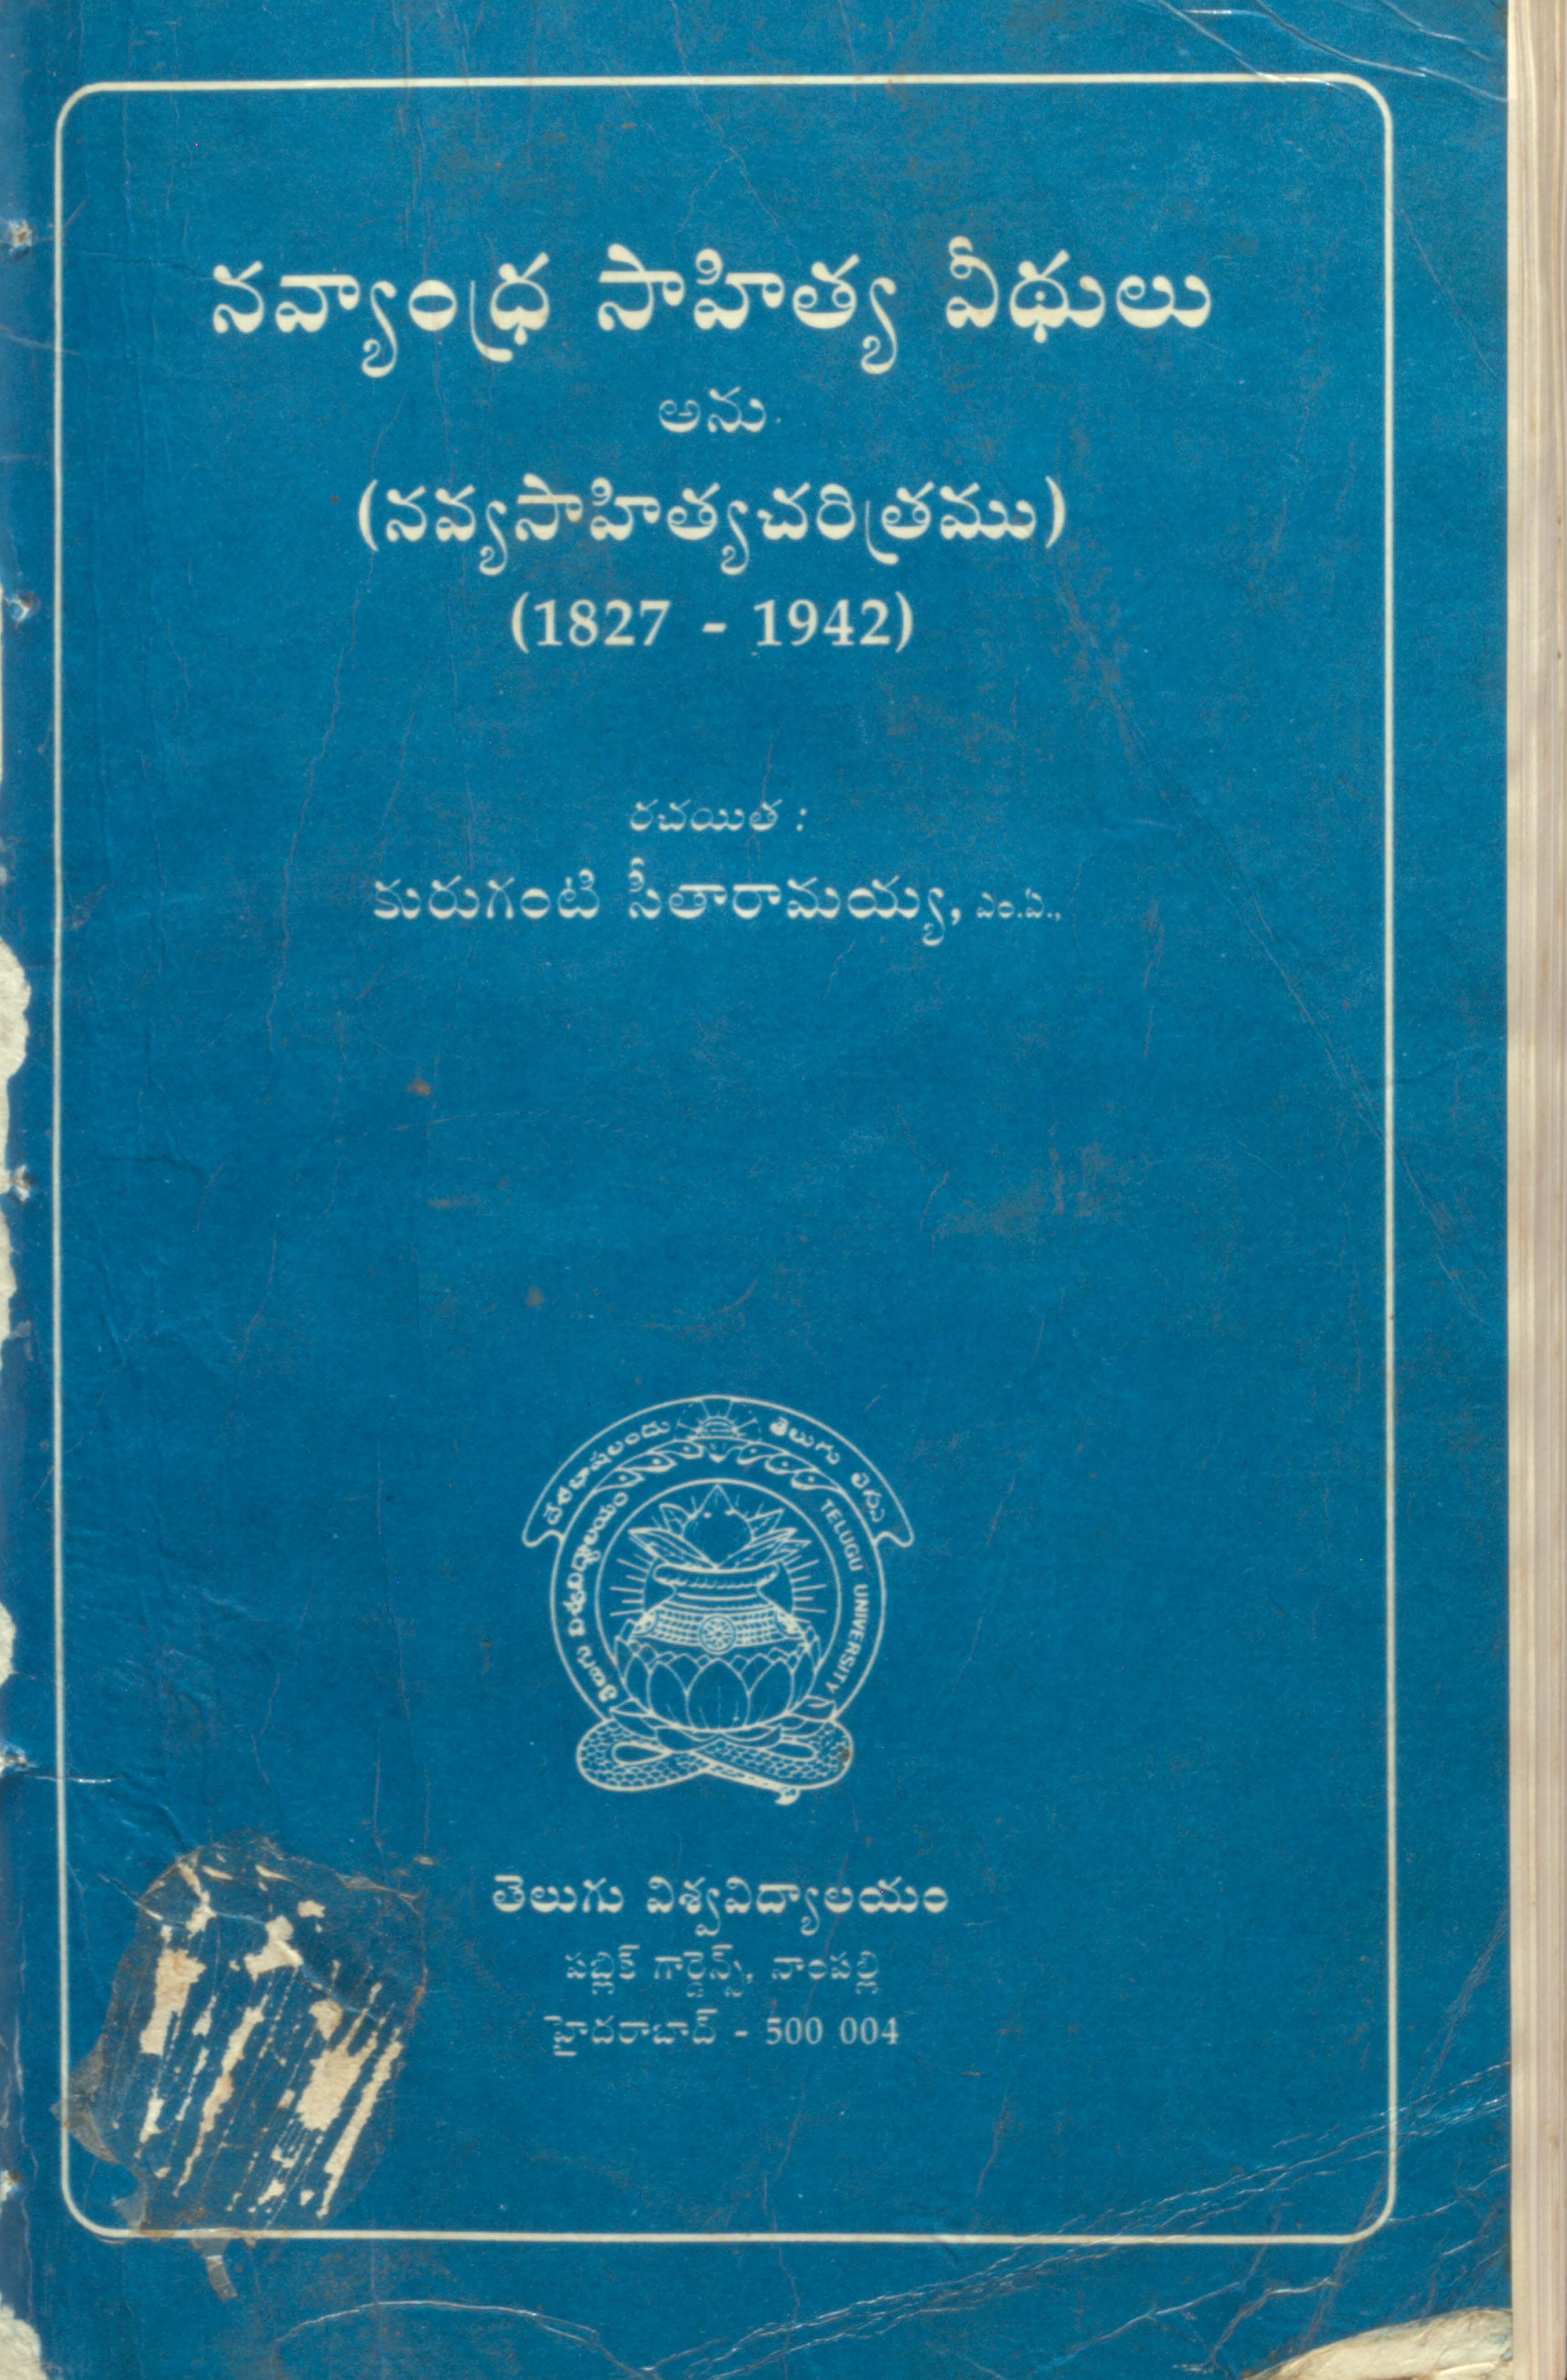 నవ్యాంధ్ర సాహిత్య వీధులు అను (నవ్యసాహిత్యచరిత్రము) (1827-1942) 